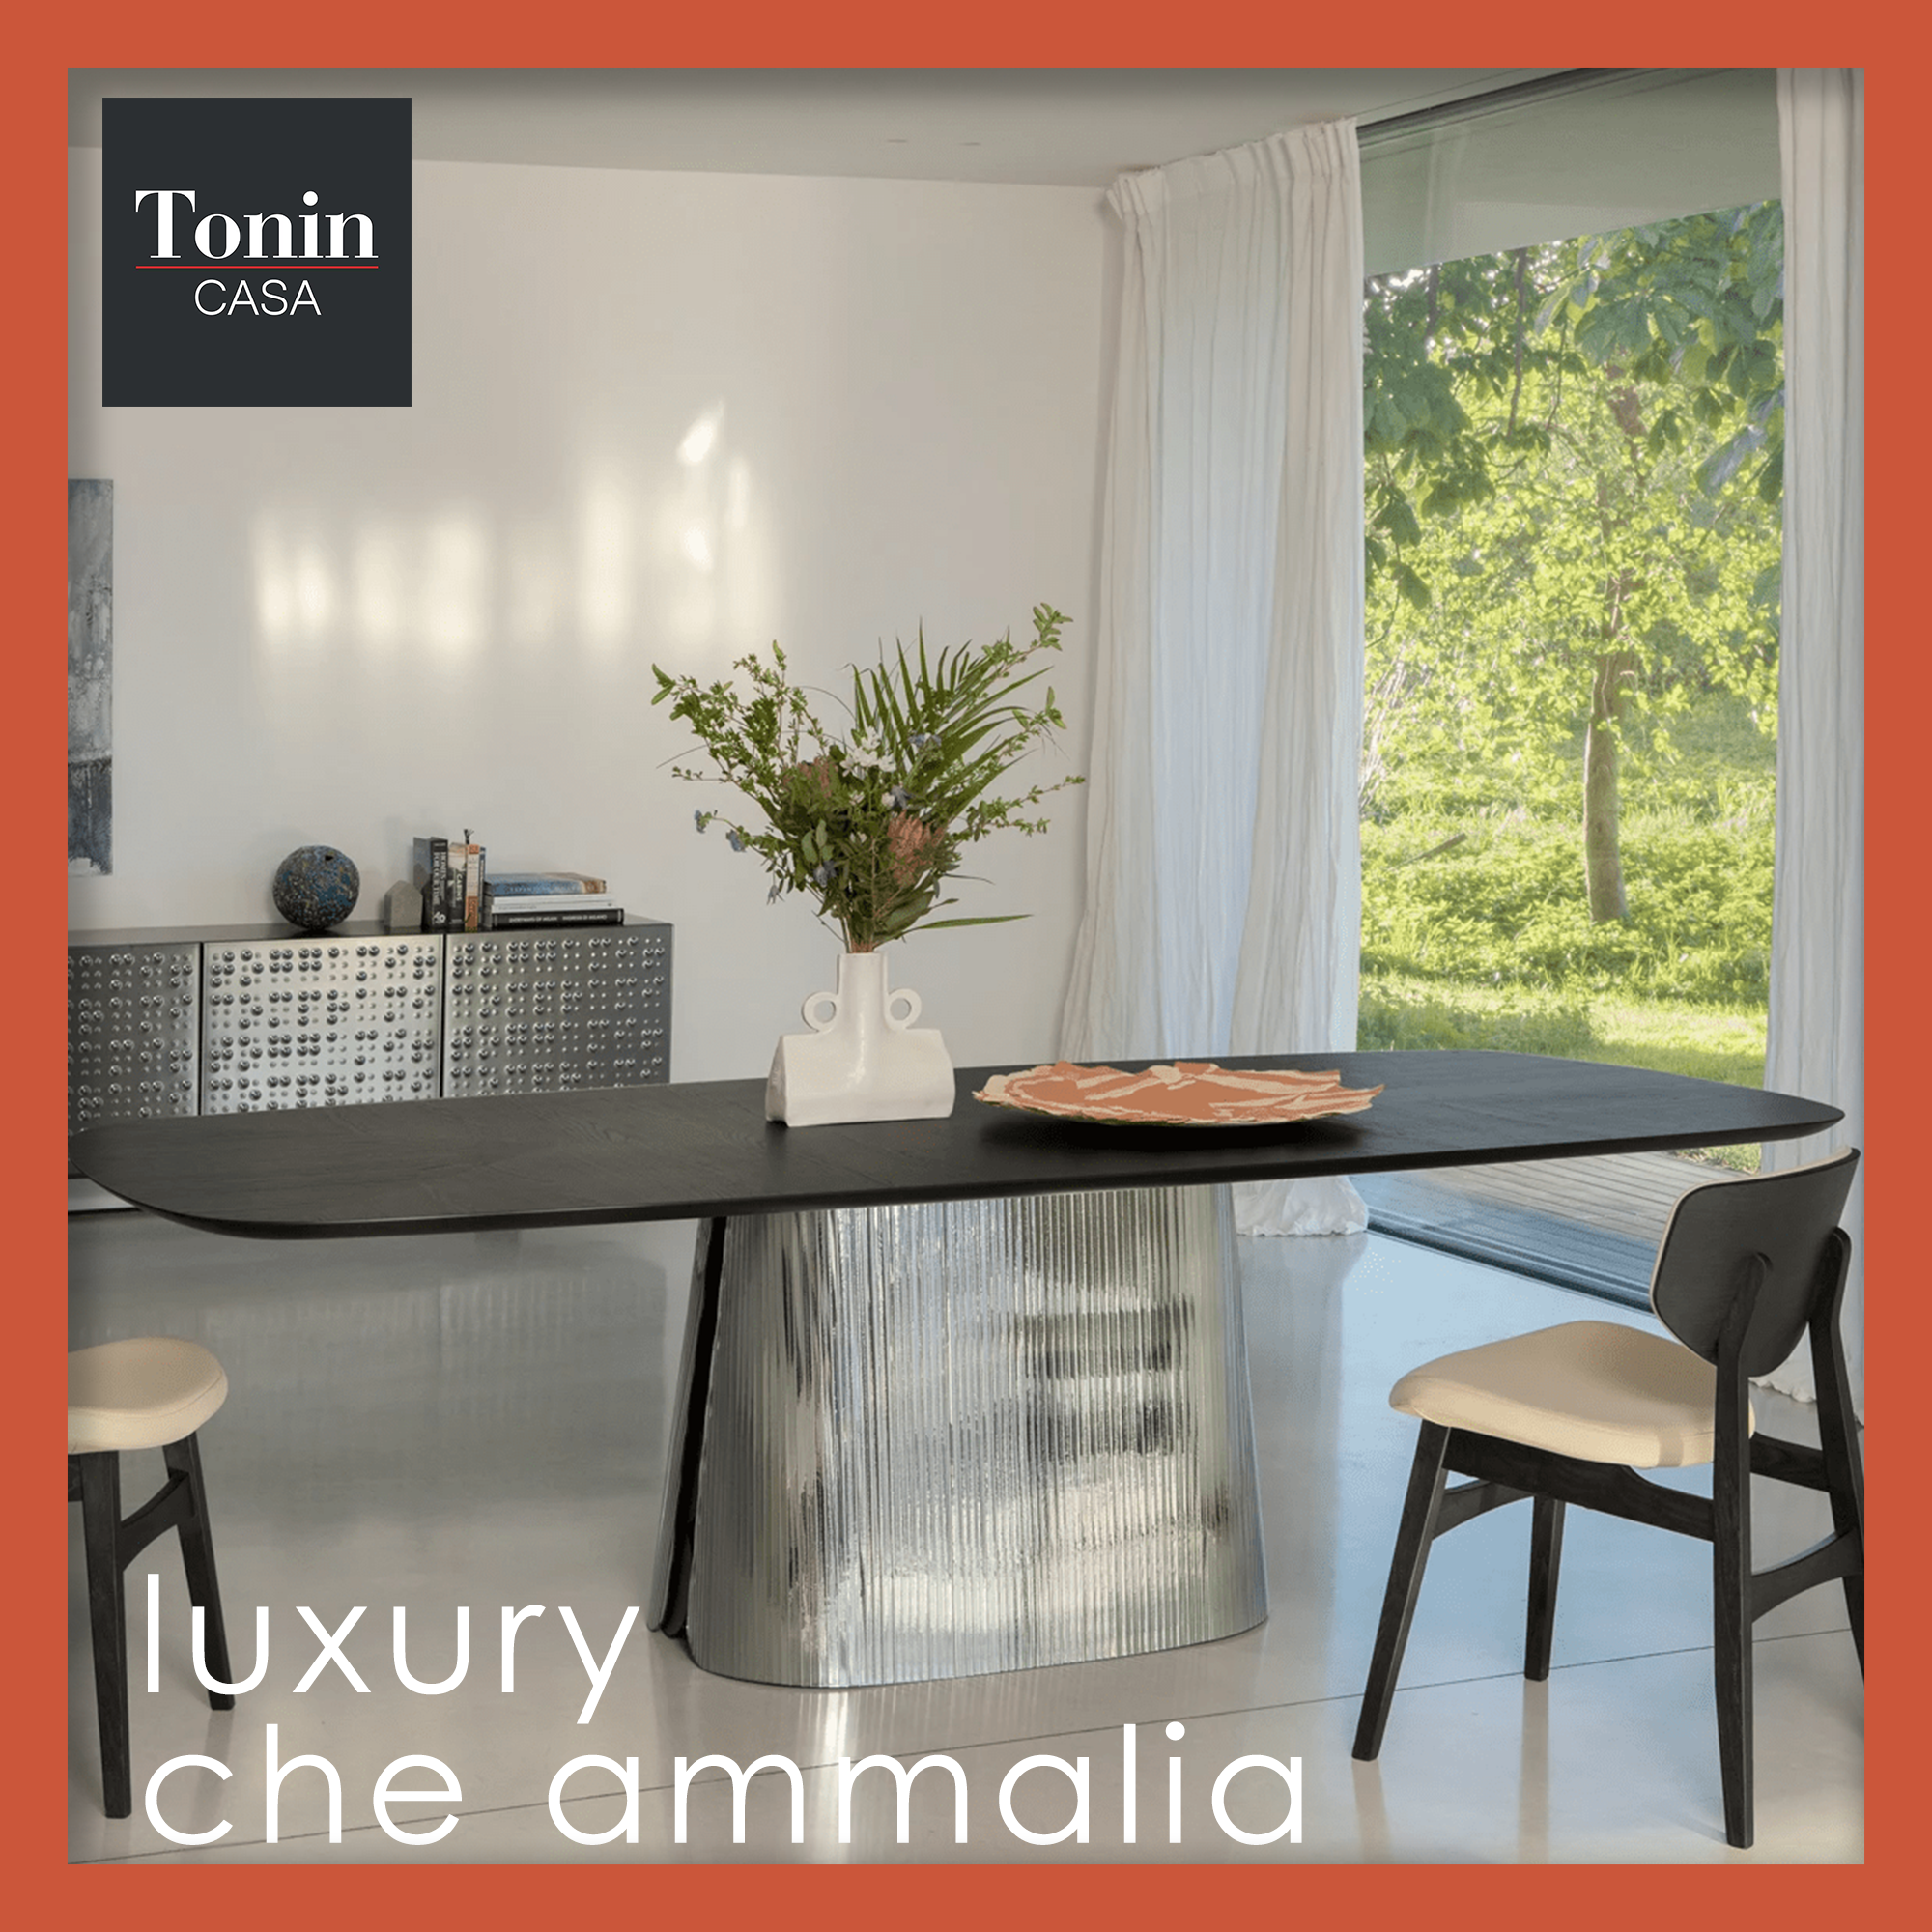 ARREDI Tonin Casa Marinelli Design Group progettazione promo sconti made in italy arredo Roma arredamento home design mobili casa